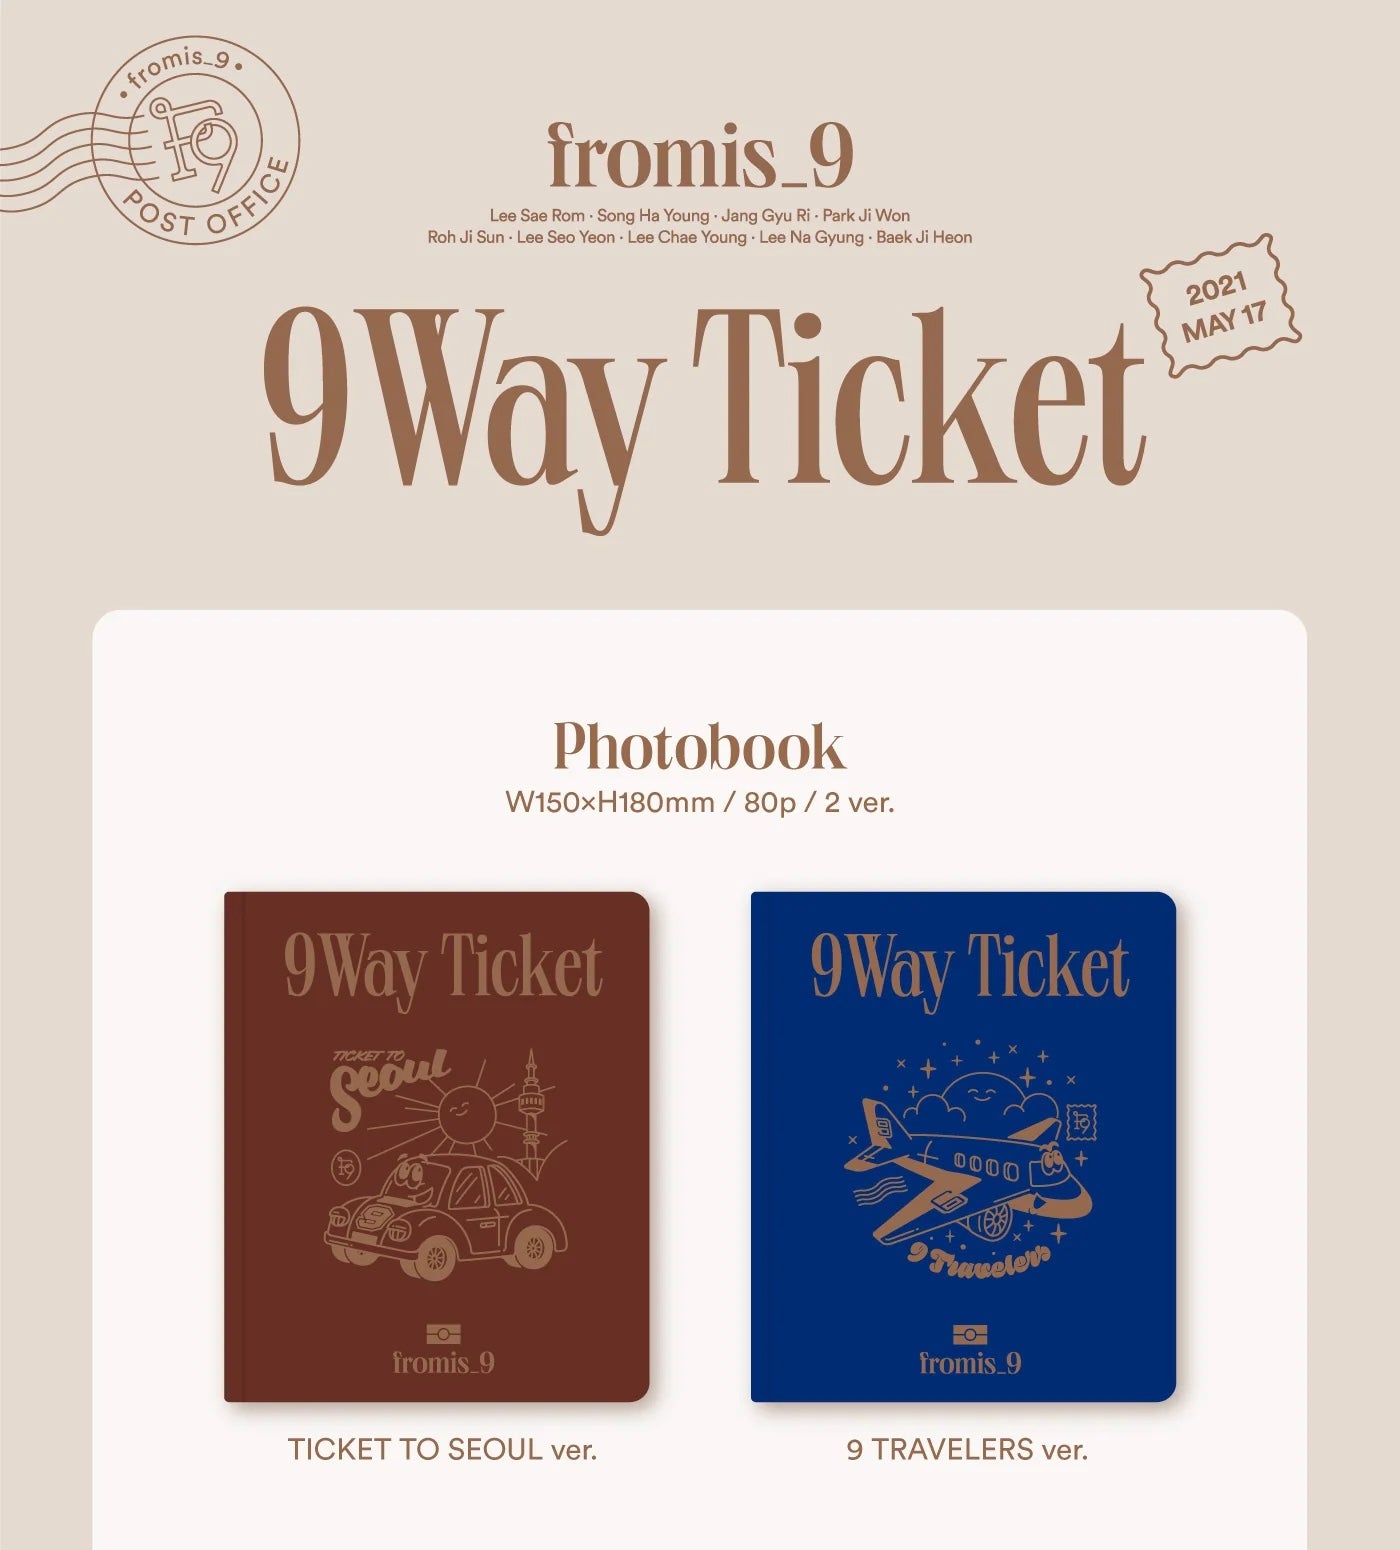 fromis_9 • 9 Way Ticket